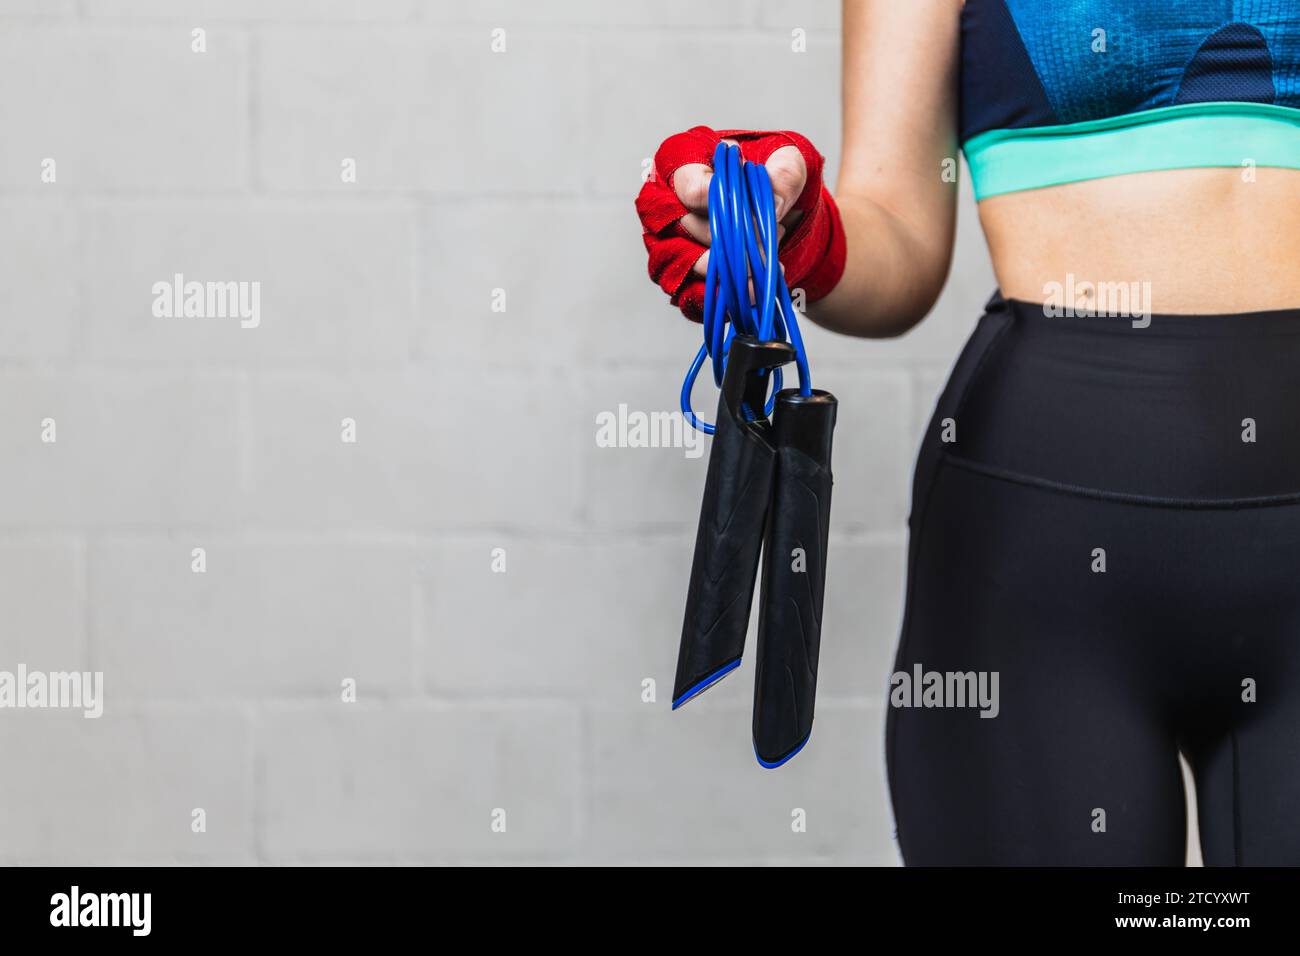 Photo horizontale fille horizontale caucasienne adolescente, habillée en vêtements de sport, avec des bandages rouges sur ses mains et une corde à sauter. Entraînement dans une salle de boxe. Banque D'Images